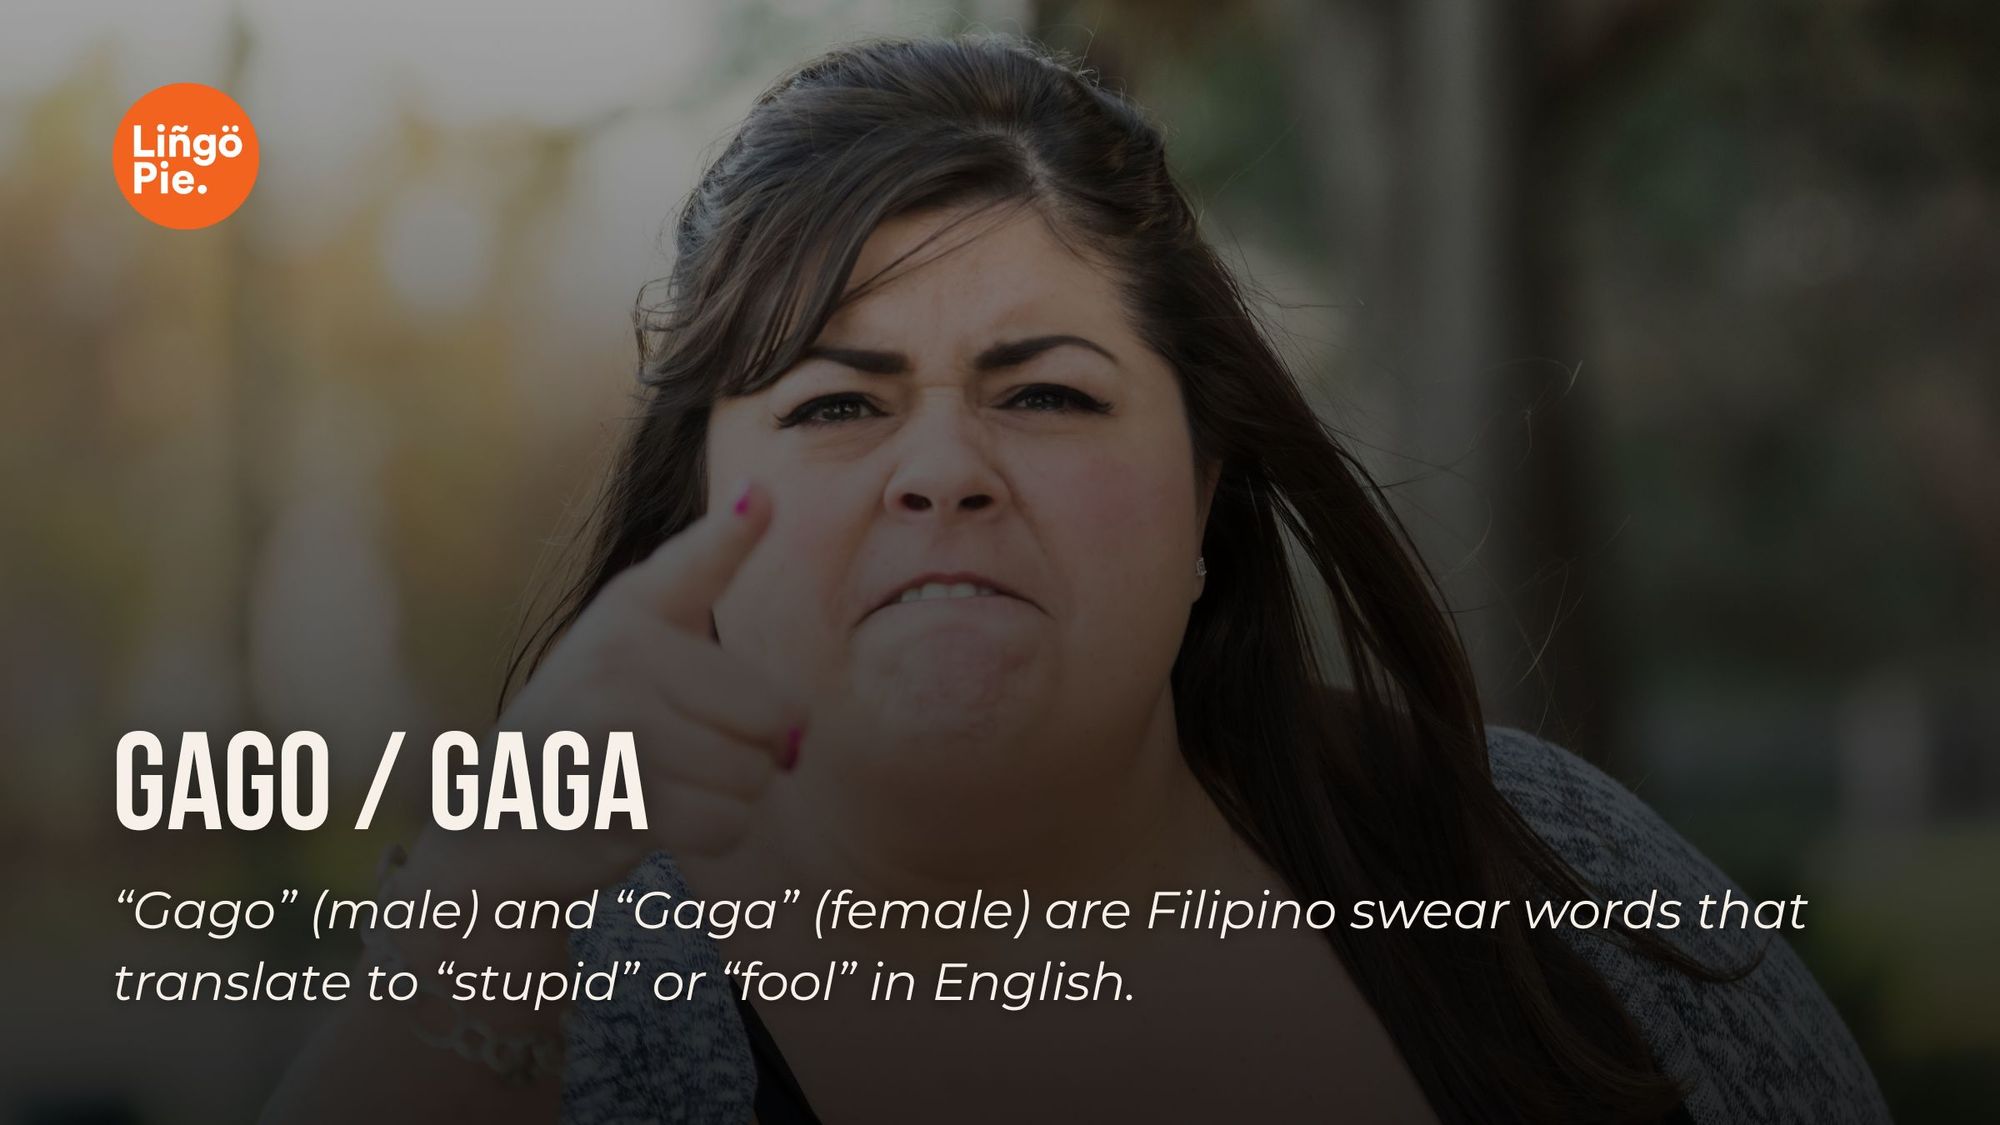 Gago / Gaga - Tagalog Swear Word